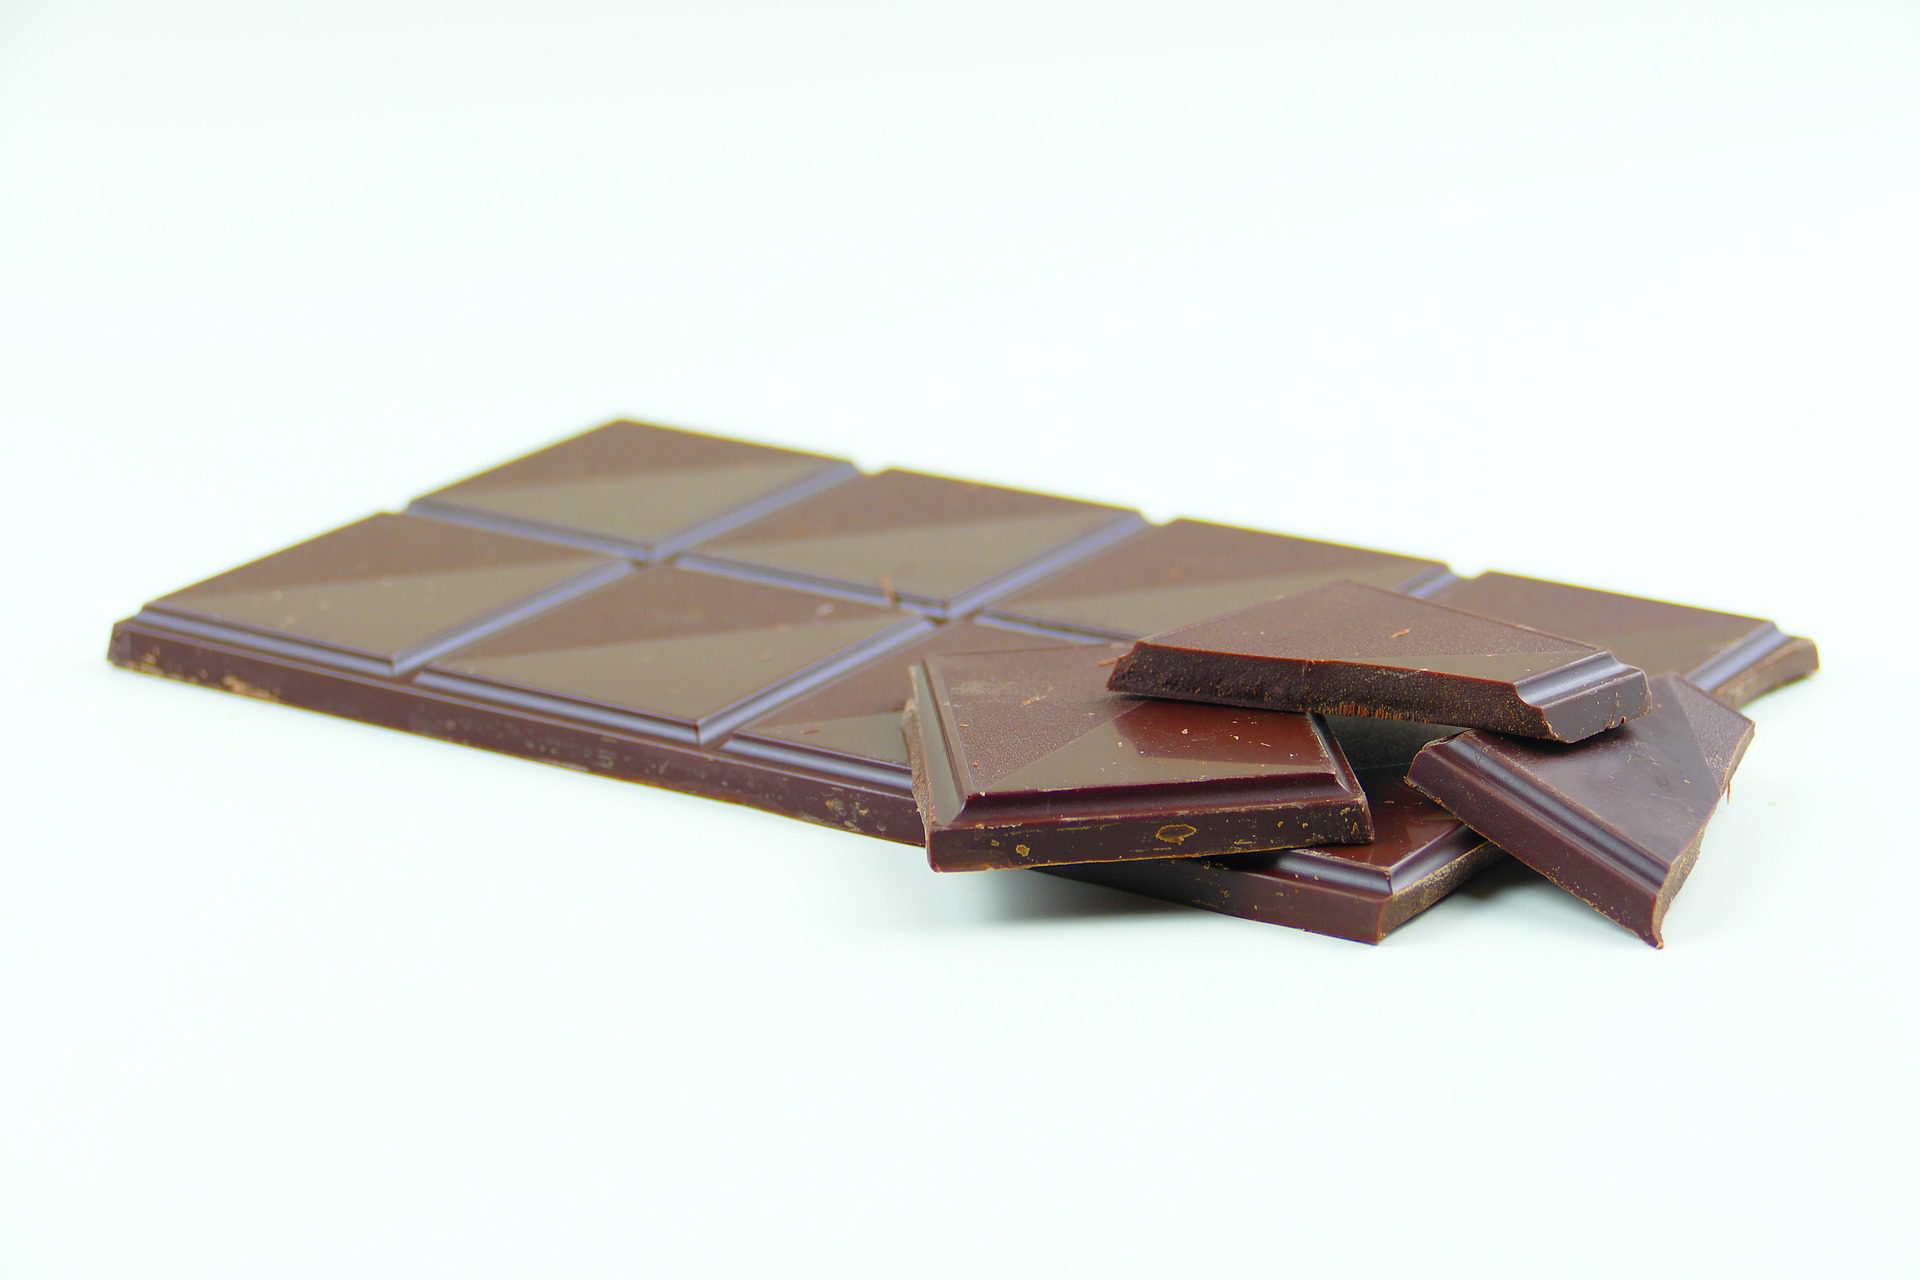 Czekolada czekoladopodobna — czy można ją nazwać czekoladą?